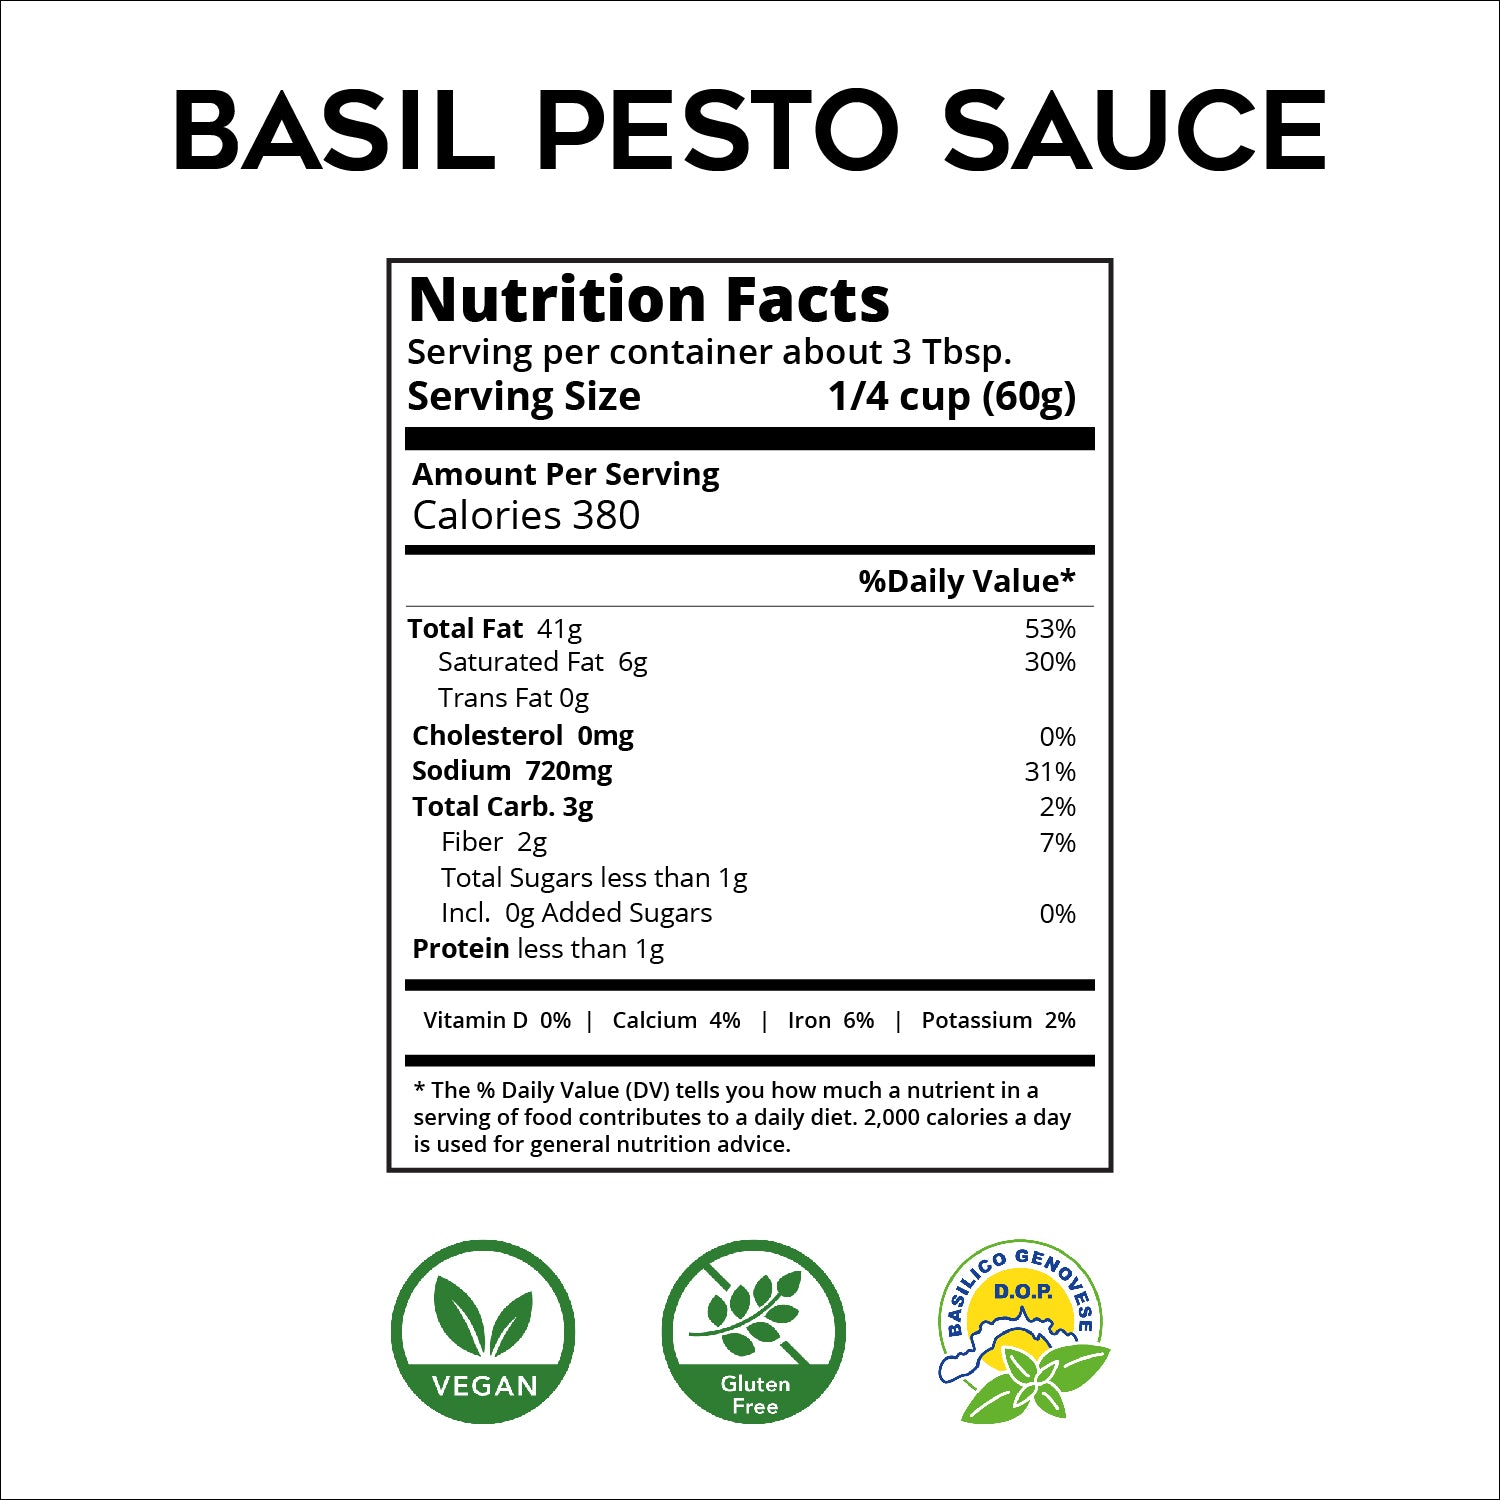 Basil Pesto Sauce - Ligurian Pesto From Italy - Vegan - by ROI